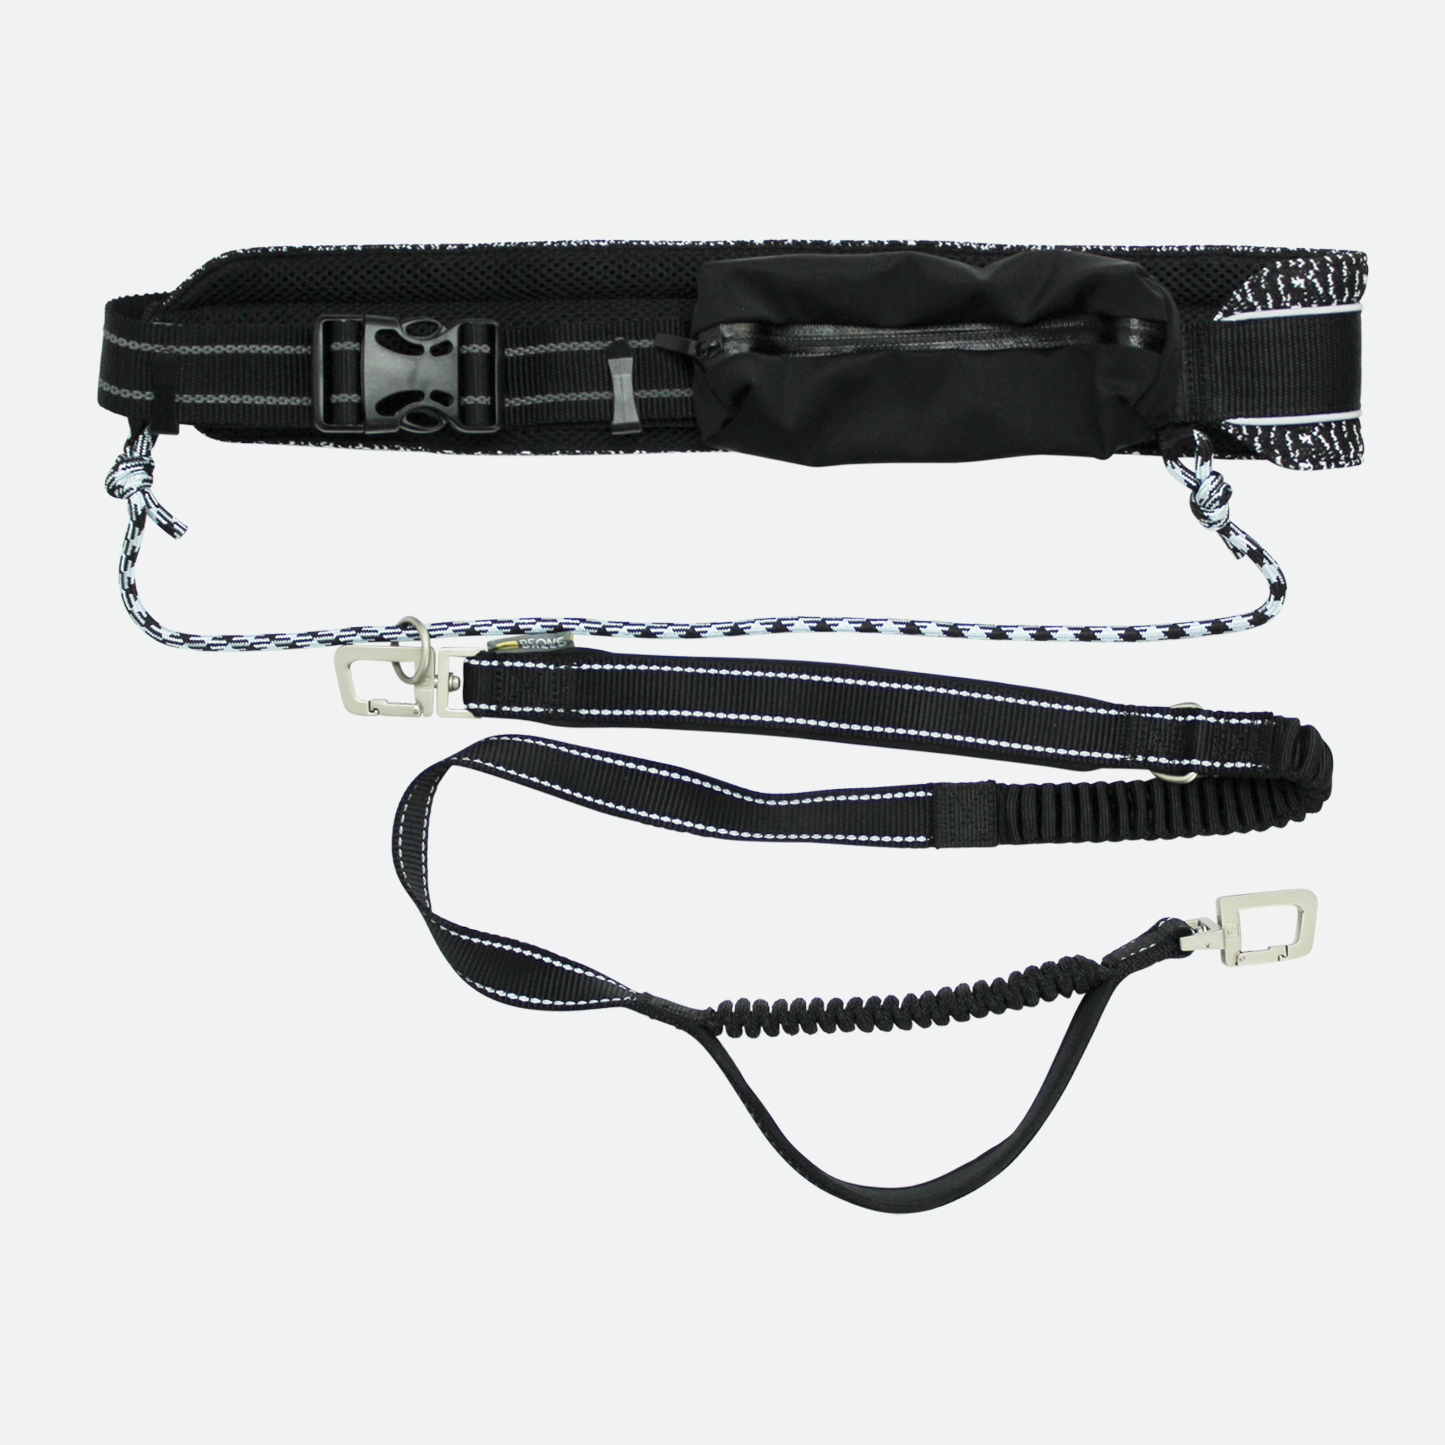 Belt & bungee leash kit for running, black